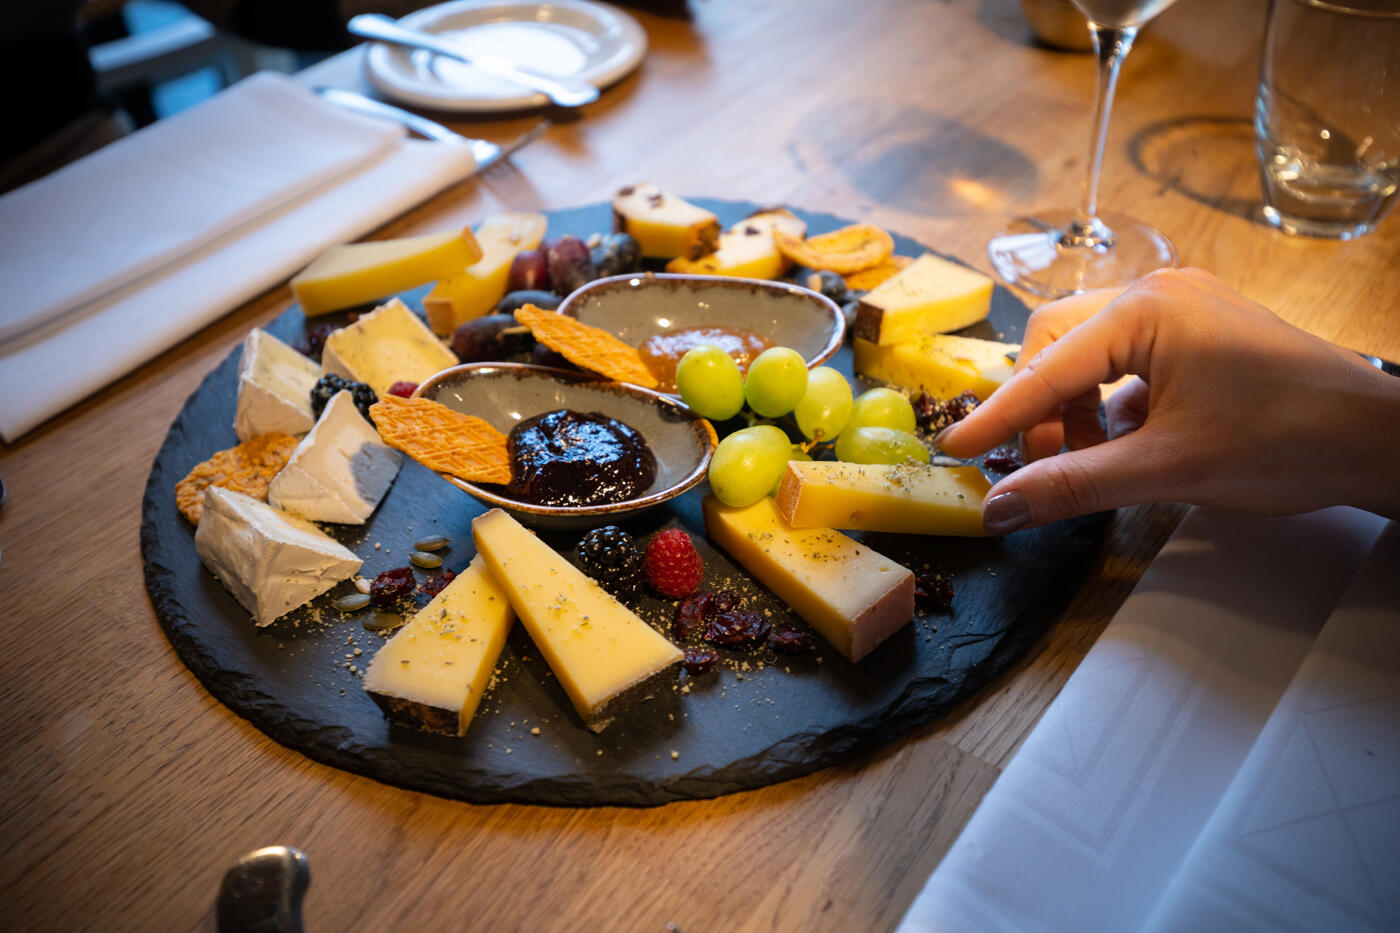 Teller mit Käsevariationen und Trauben. Rechts ist eine Hand, die ein Stück Käse greift.